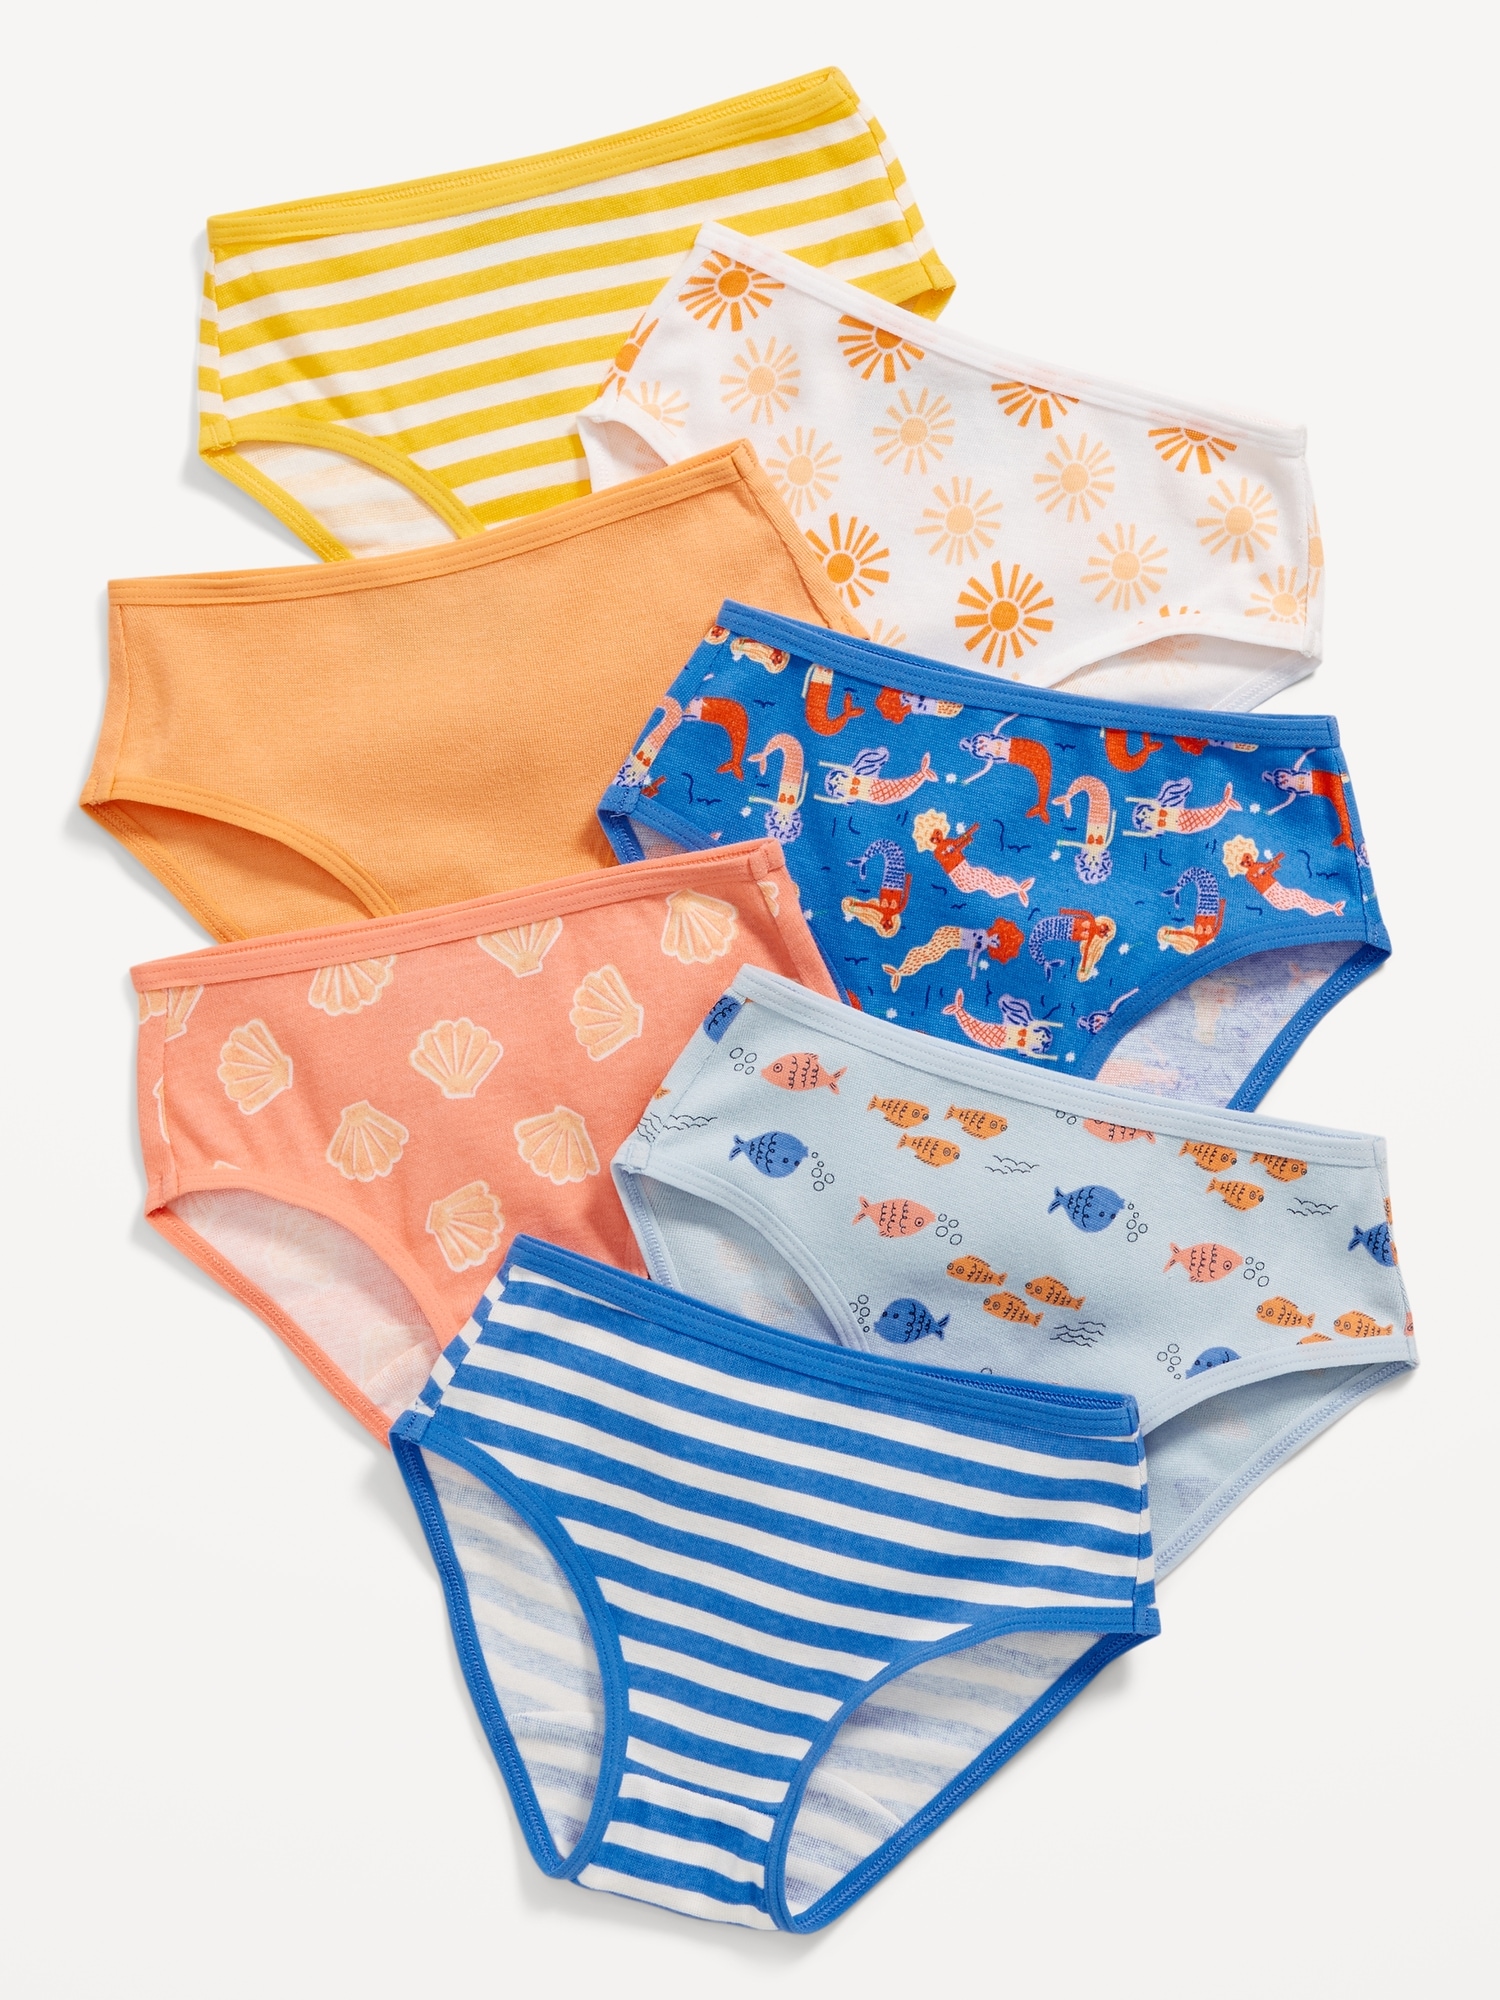 Bubble Print Girls Panty, Toddler Underwear, Underwear for Girls